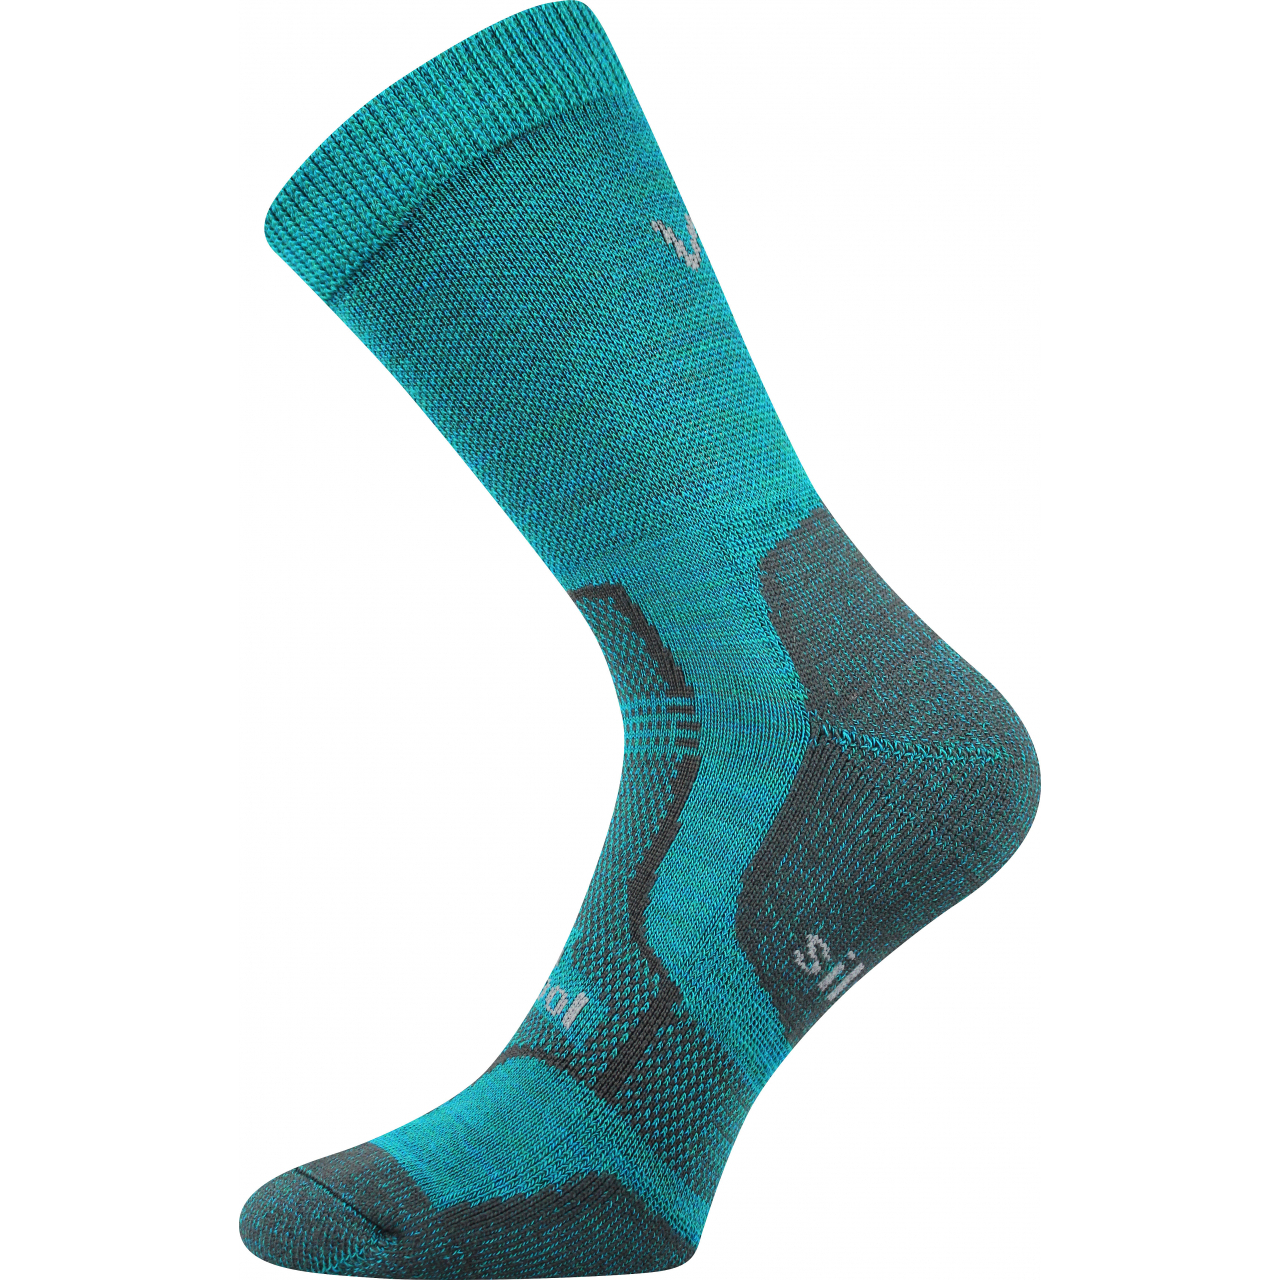 Ponožky zimní unisex Voxx Granit - tyrkysové, 39-42